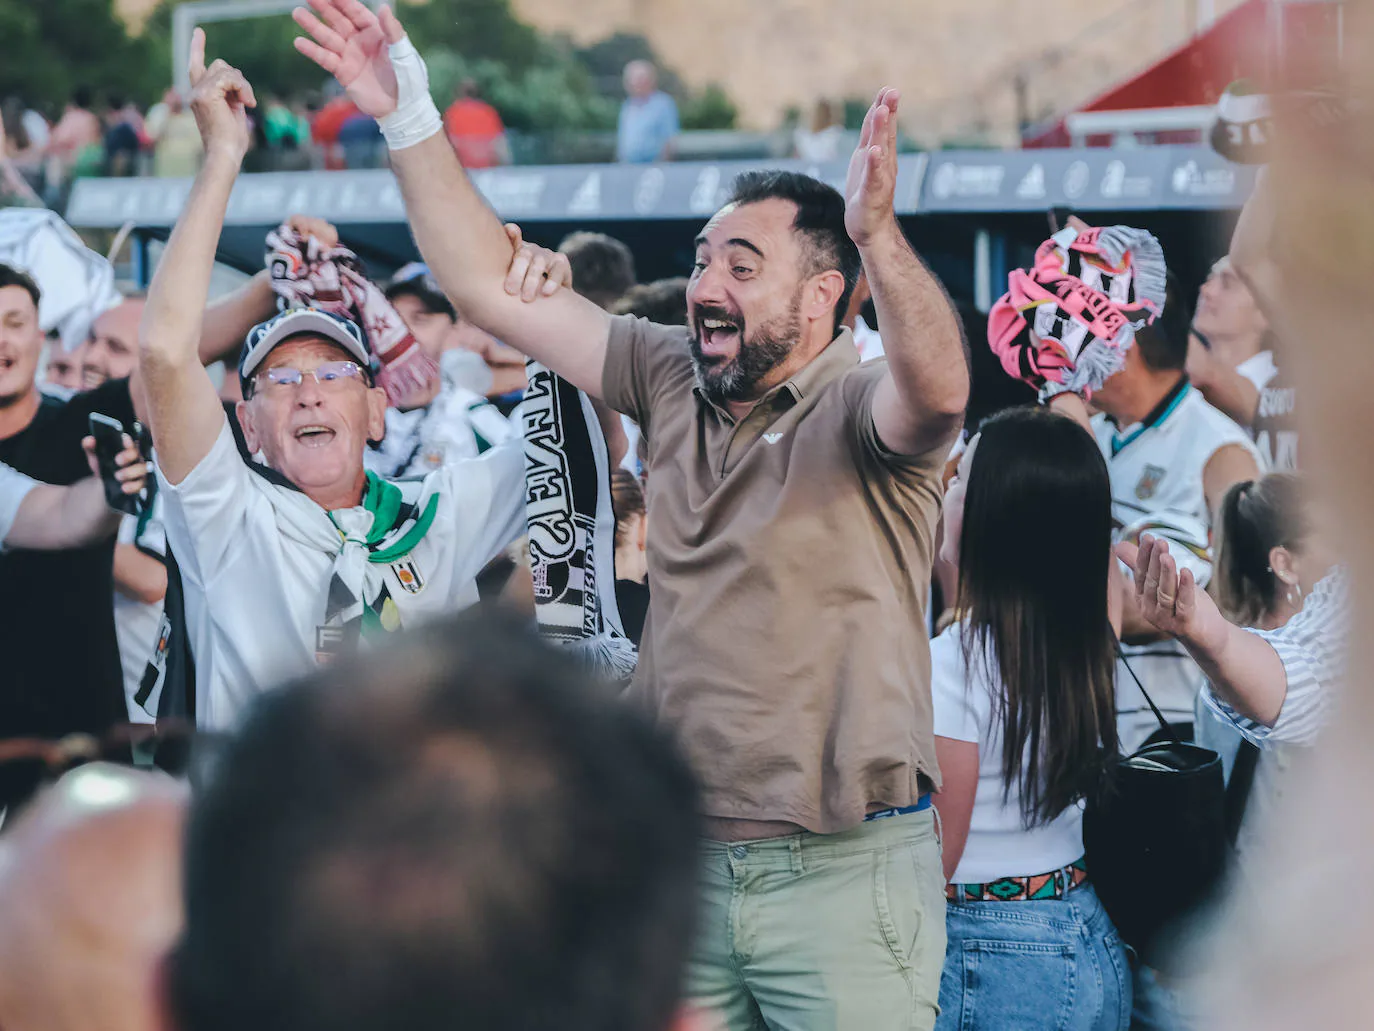 Fotos: Las mejores imágenes del partido y la celebración del ascenso a Primera RFEF del Mérida